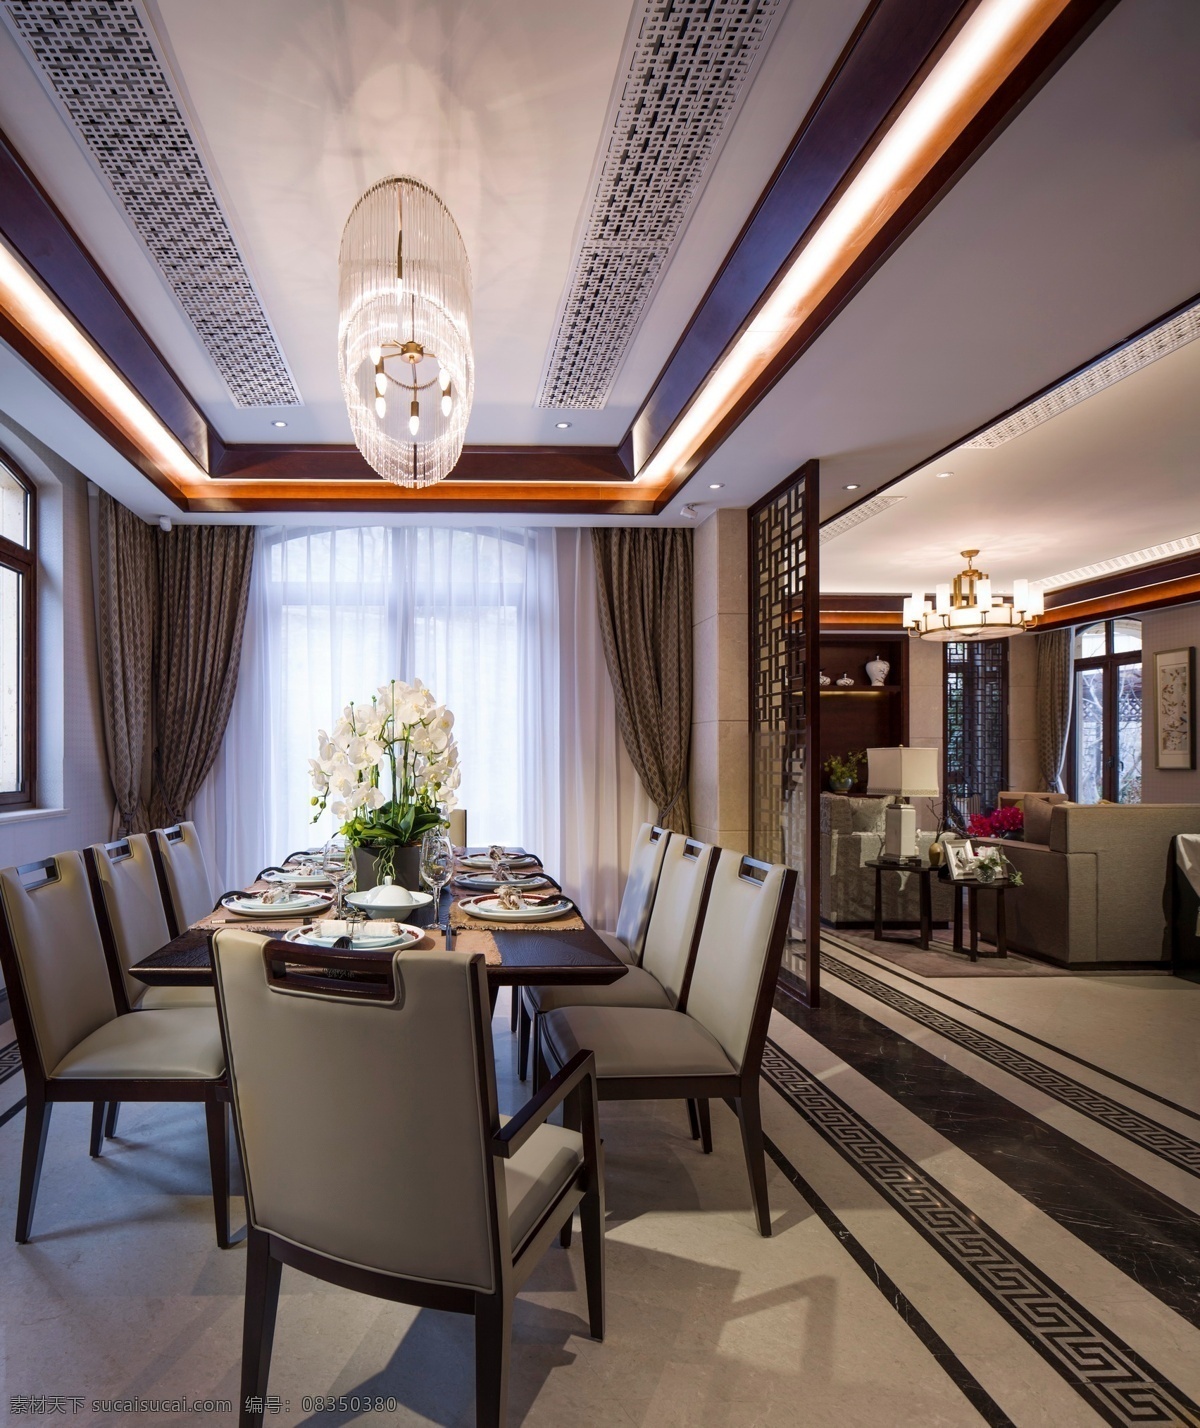 室内 餐厅 现代 豪华 装修 效果图 长方形餐桌 清新园艺 华美水晶灯 大落地窗